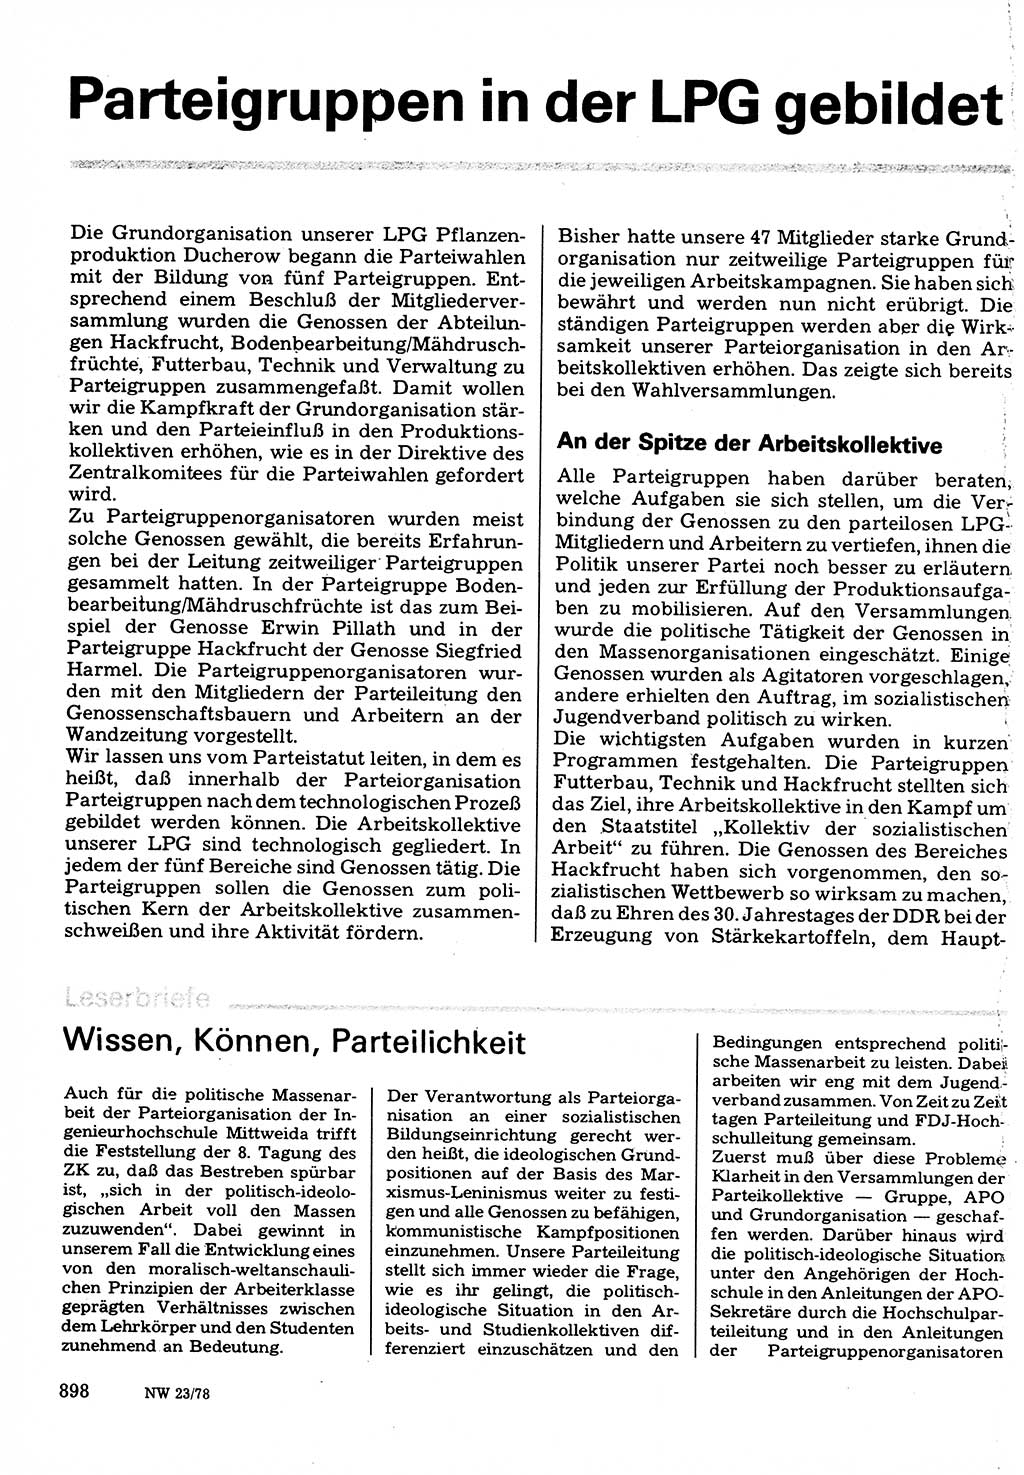 Neuer Weg (NW), Organ des Zentralkomitees (ZK) der SED (Sozialistische Einheitspartei Deutschlands) für Fragen des Parteilebens, 33. Jahrgang [Deutsche Demokratische Republik (DDR)] 1978, Seite 898 (NW ZK SED DDR 1978, S. 898)